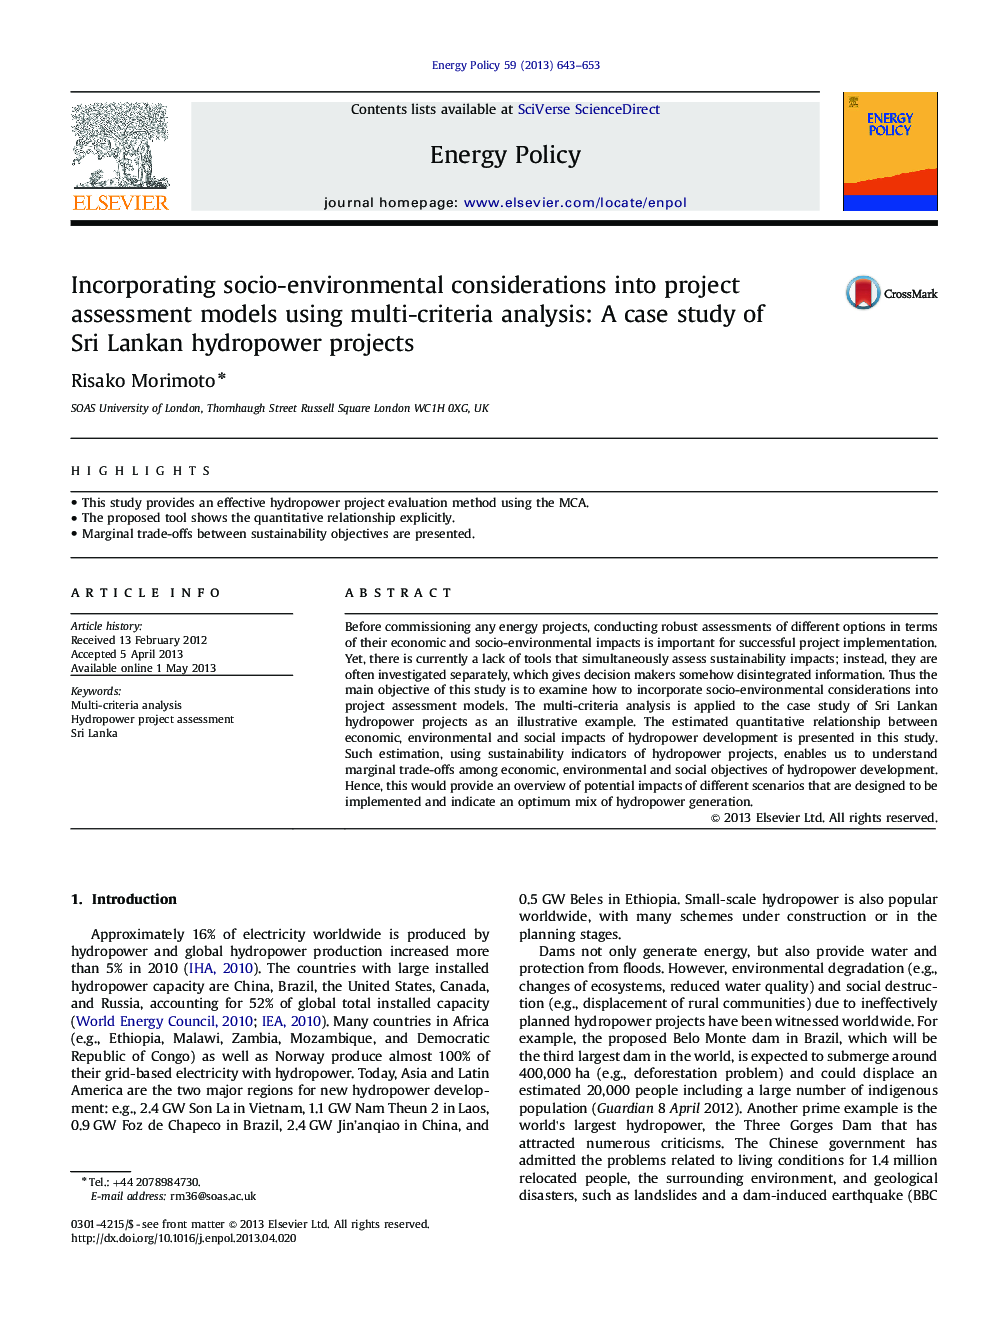 در نظر گرفتن ملاحظات اجتماعی و محیطی در مدل های ارزیابی پروژه با استفاده از تجزیه و تحلیل چند معیار: مطالعه موردی پروژه های برق آبی سریلانکا 